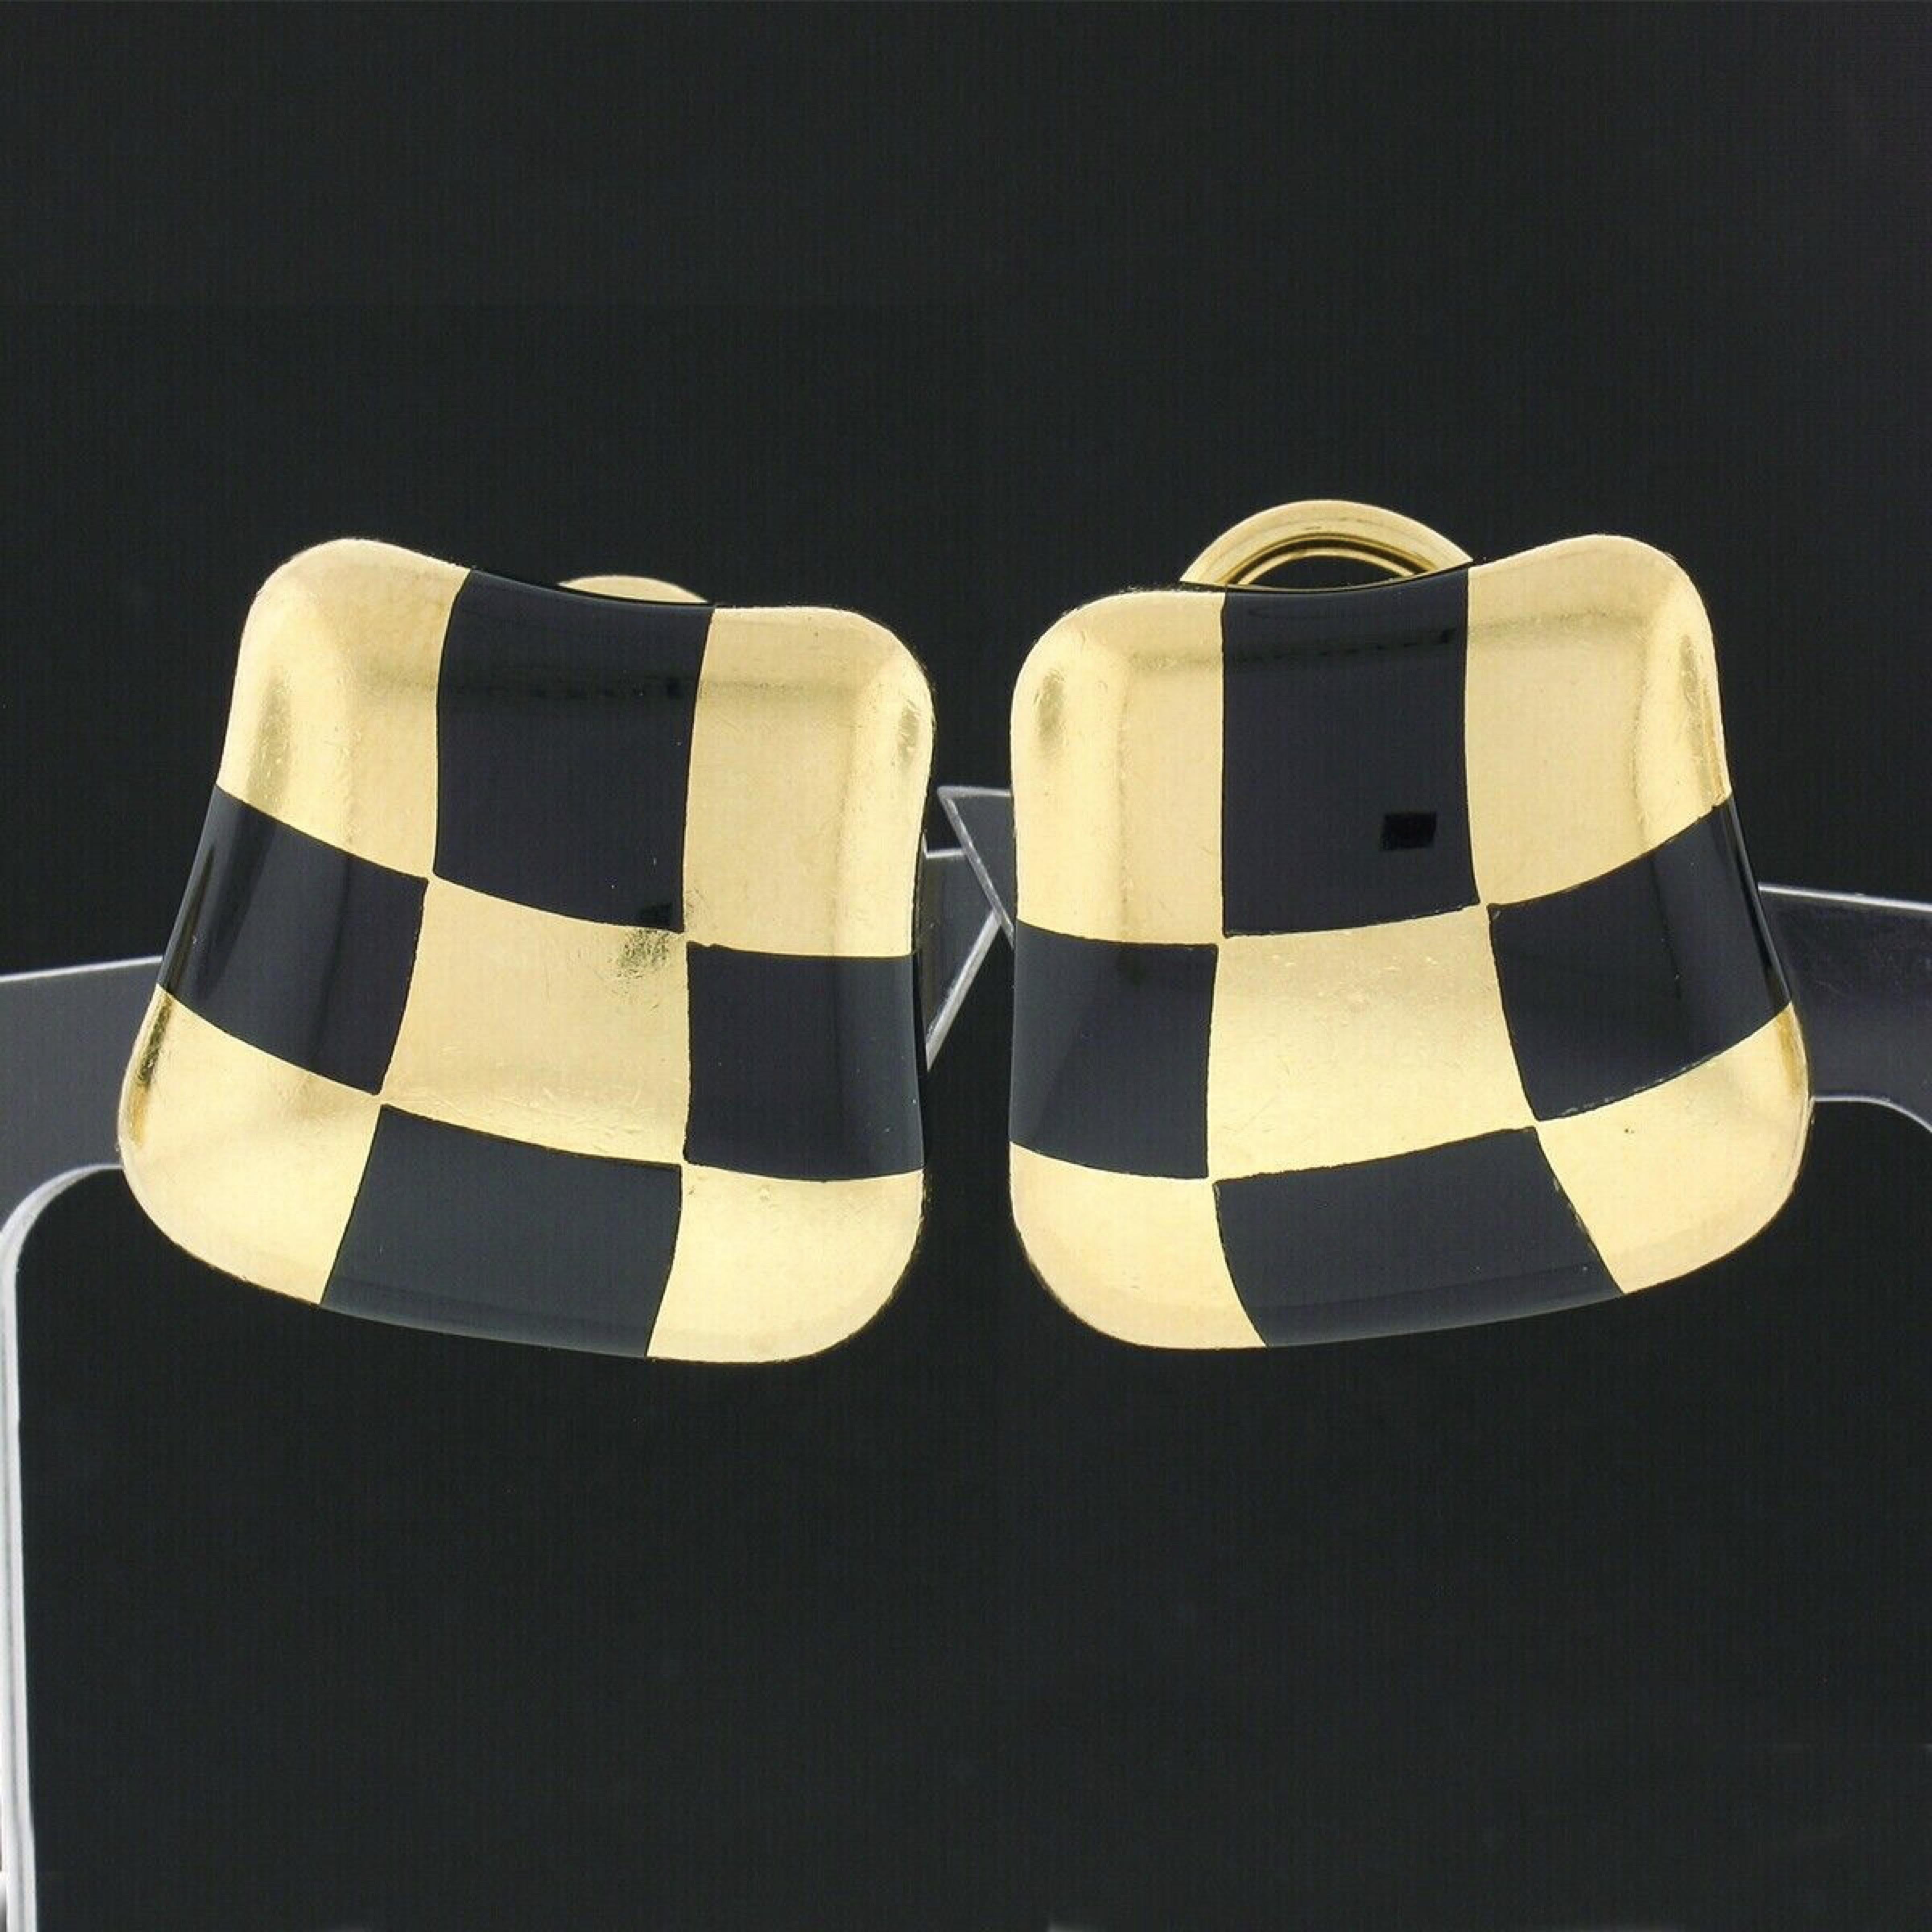 Vintage 1984 Angela Cummings 18k Gold Inlaid Black Onyx Checkerboard Earrings 1